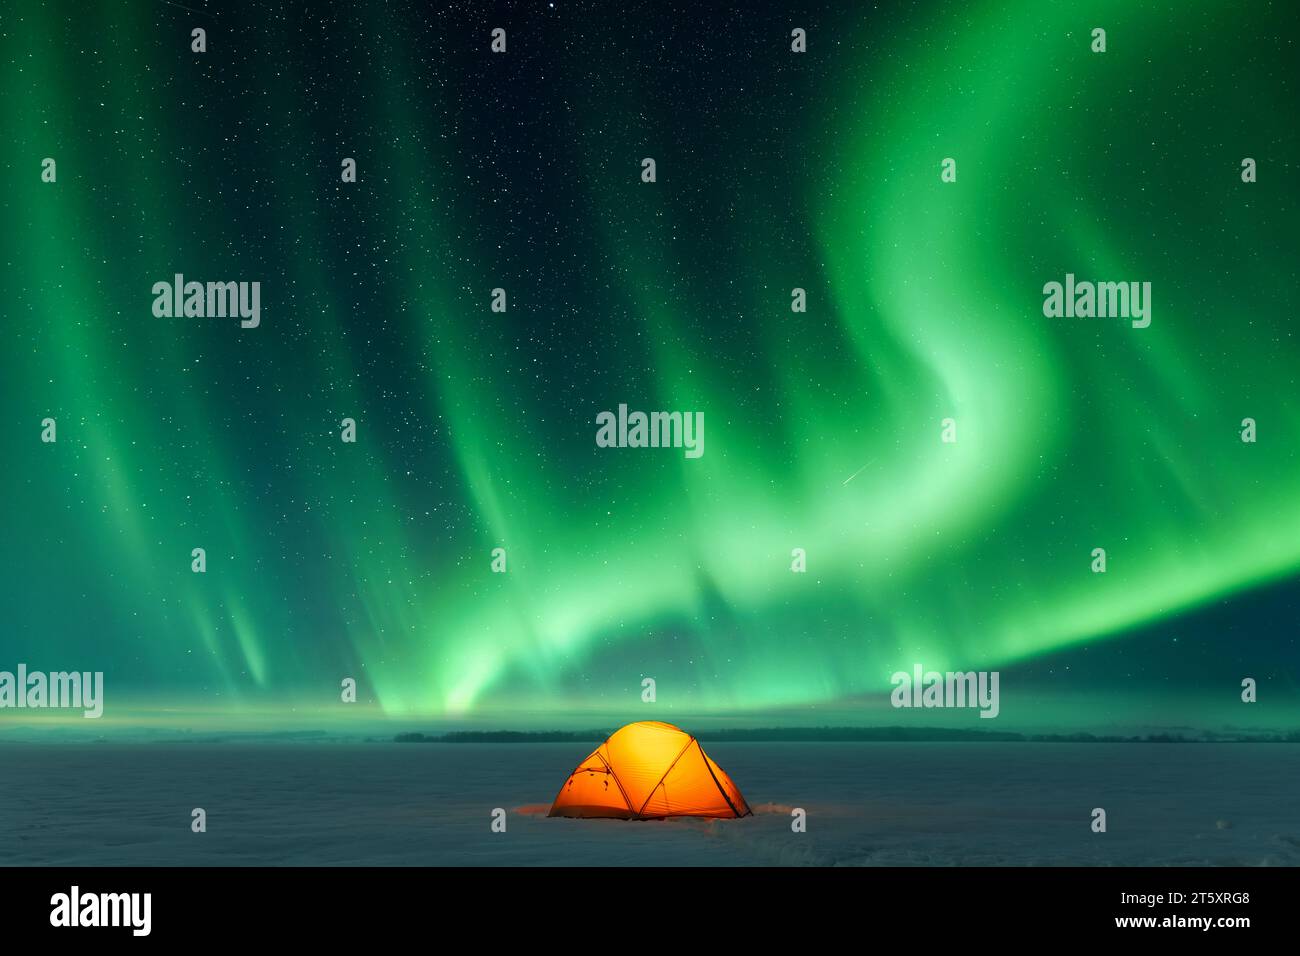 Tenda arancione illuminata dall'interno sullo sfondo dell'incredibile cielo con l'aurora boreale. Aurora boreale in campo invernale Foto Stock